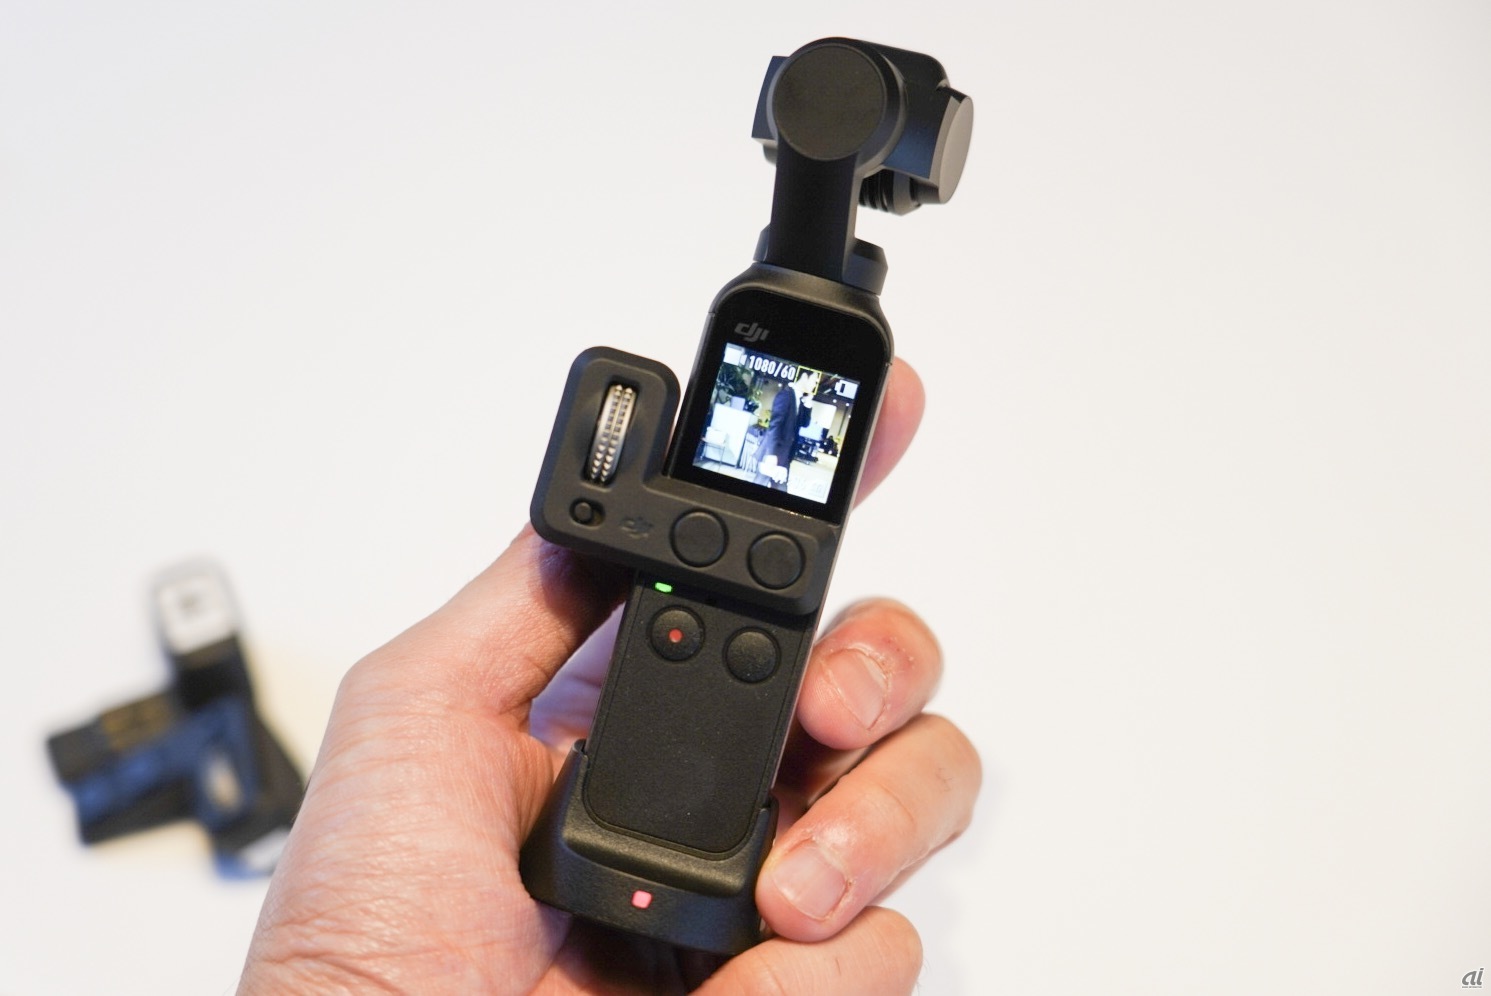 ジンバル内蔵で“ブレない”超小型カメラ「Osmo Pocket」--DJI発表、税込 